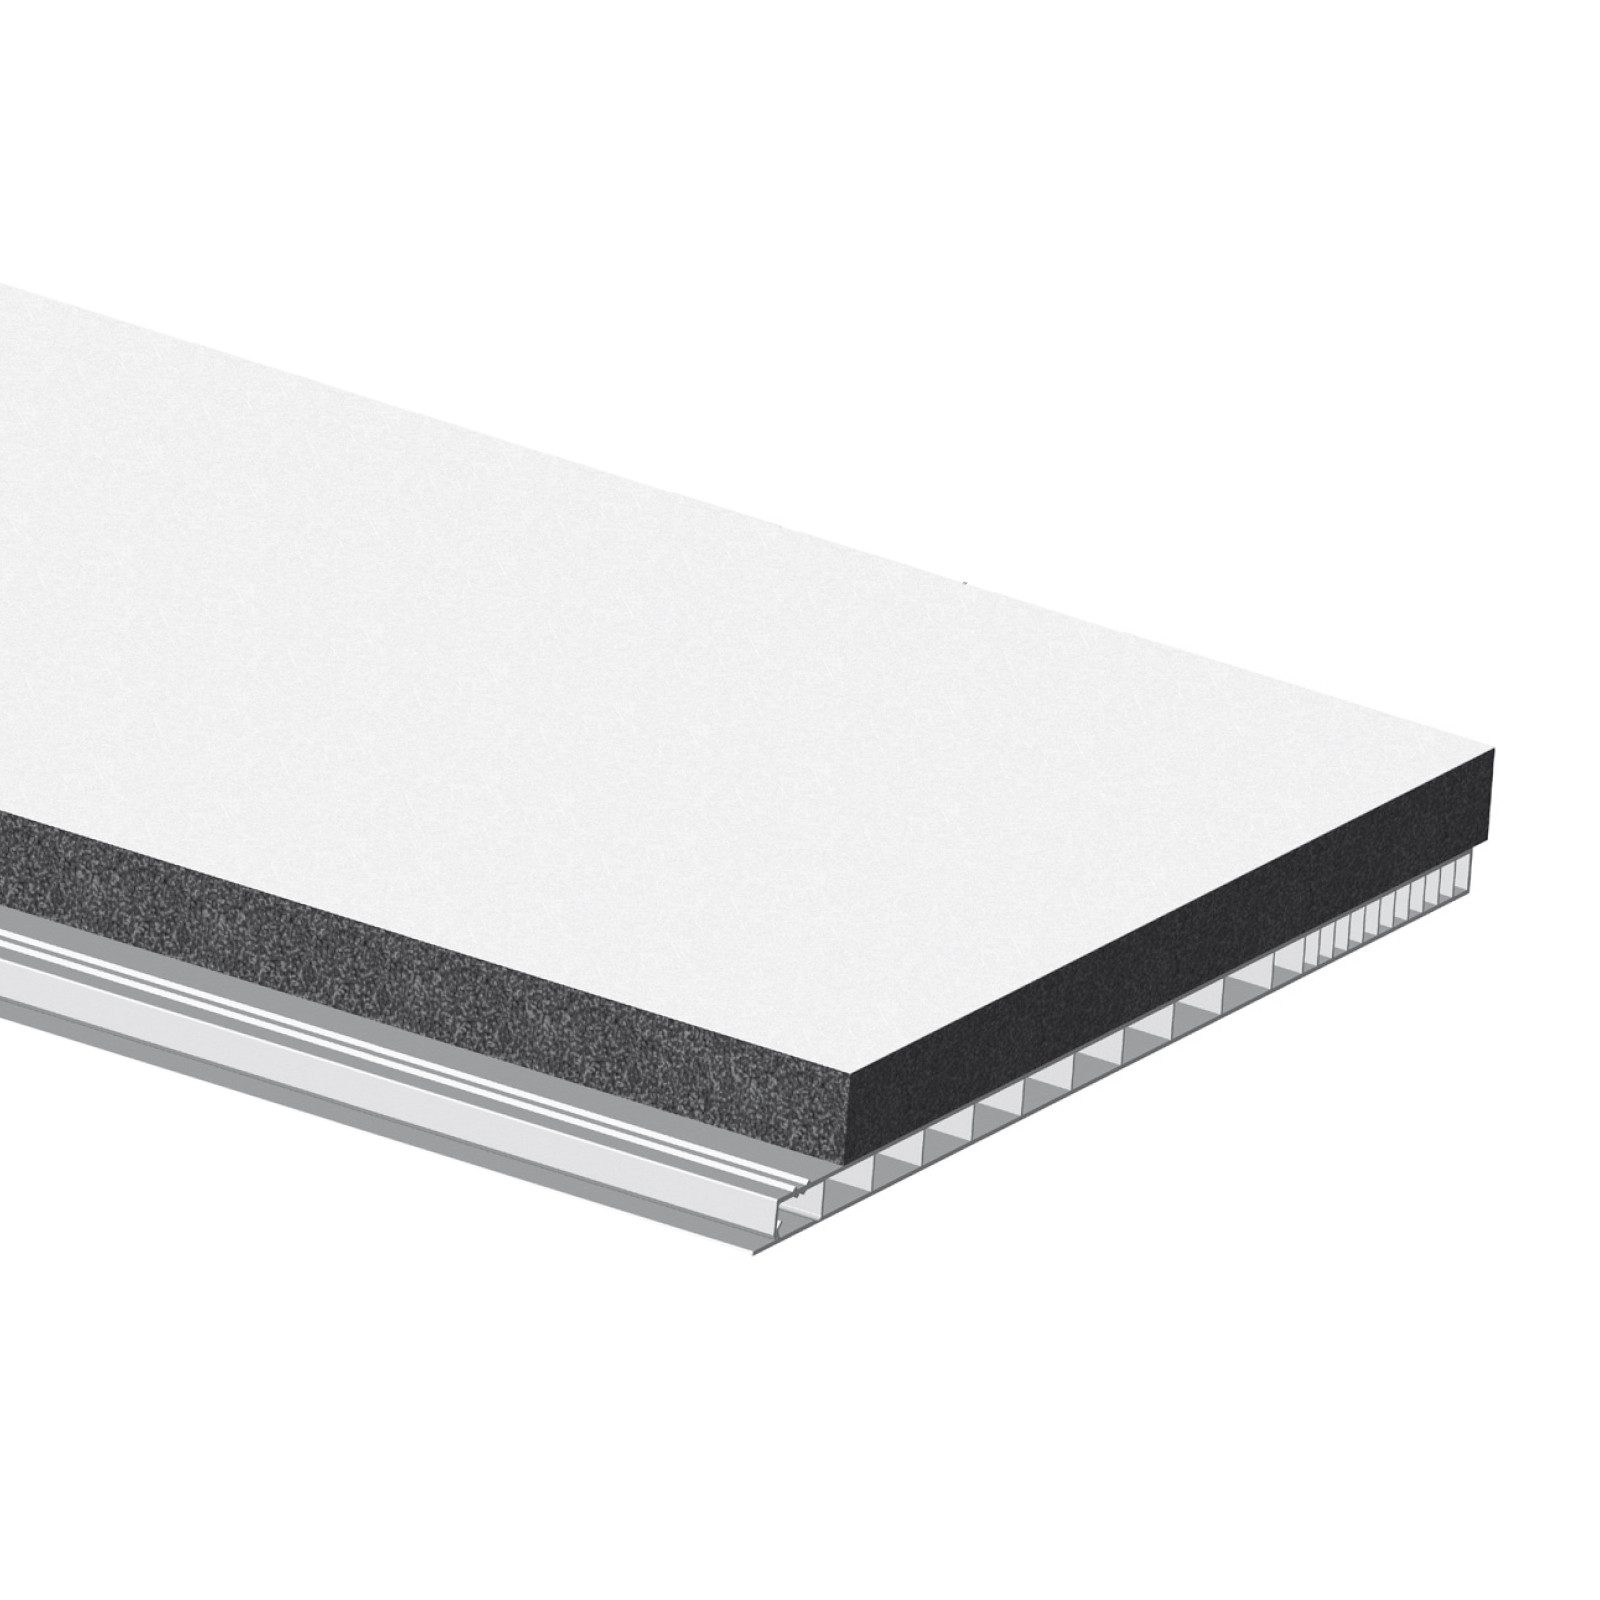 Nobily Rollladenkastendämmung PVC in weiß, Wärmedurchlasswiderstand + Schallschutzfolie